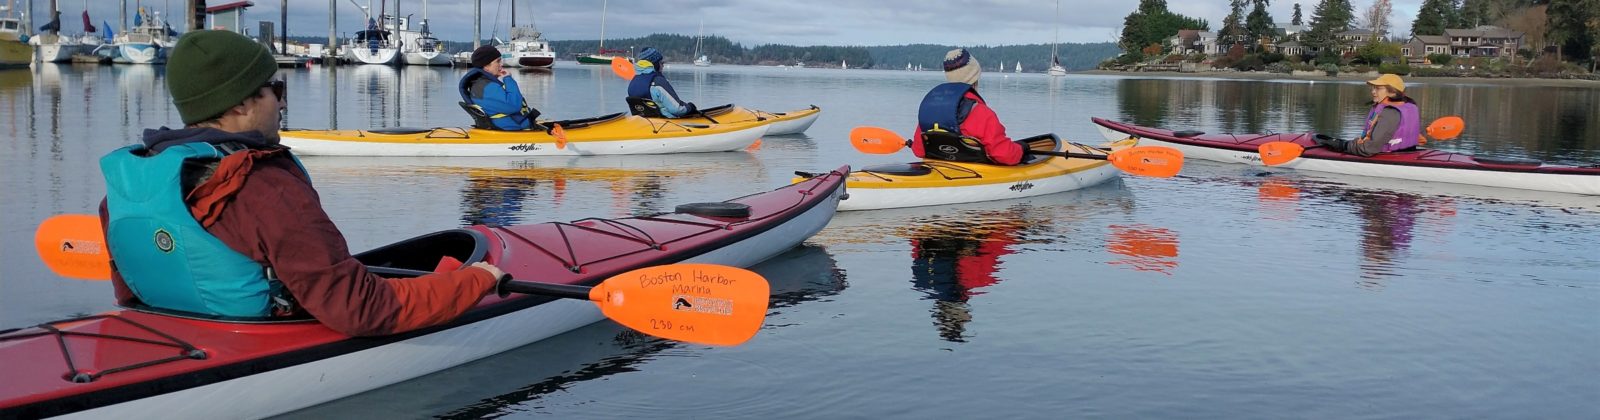 DERT volunteers during shoreline armoring kayak patrol Boston Harbor Puget Sound